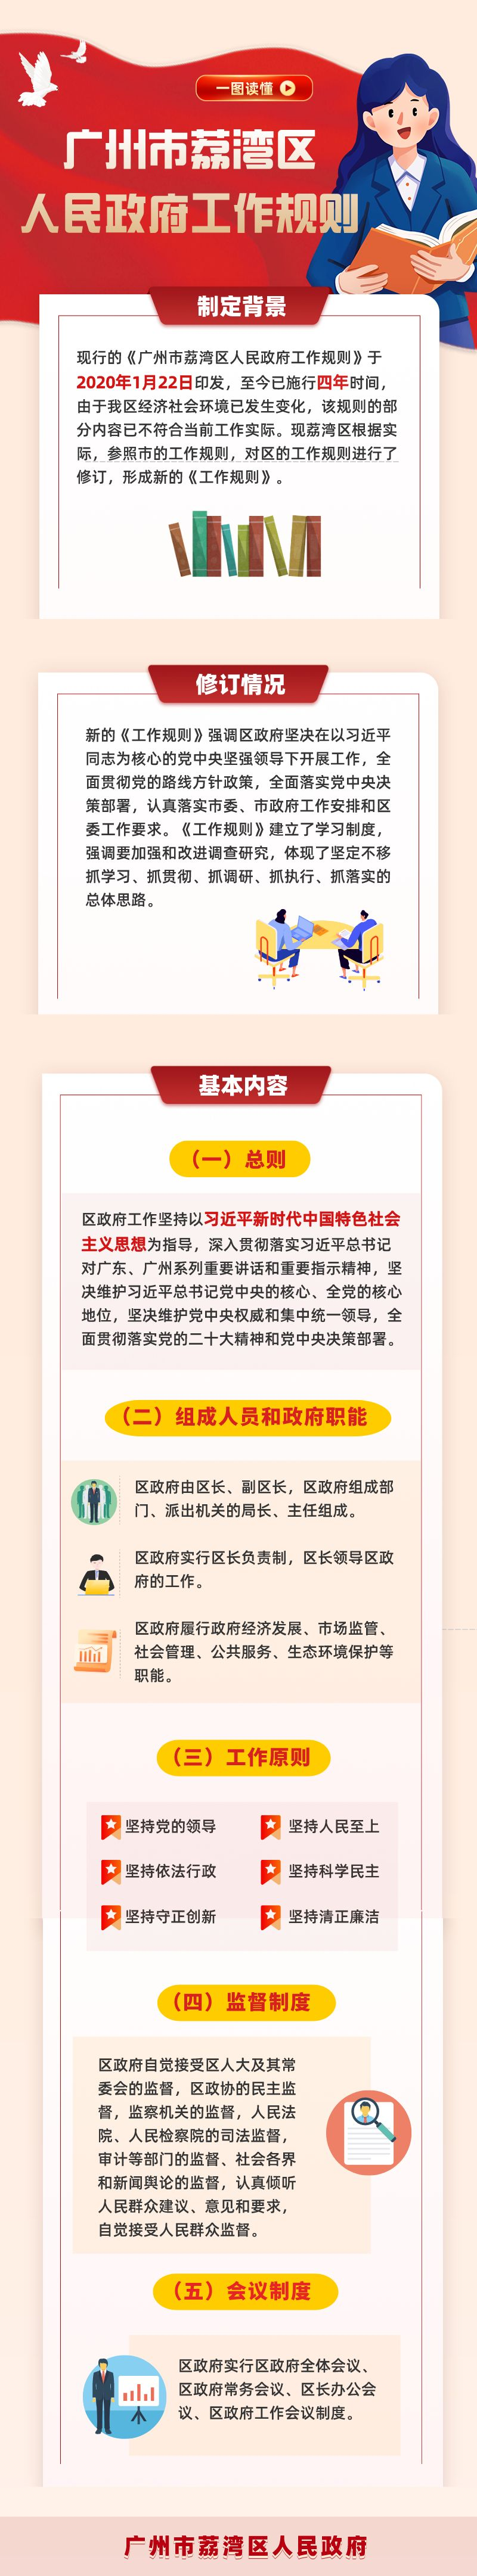 一图读懂《广州市荔湾区人民政府工作规则》1(3).png